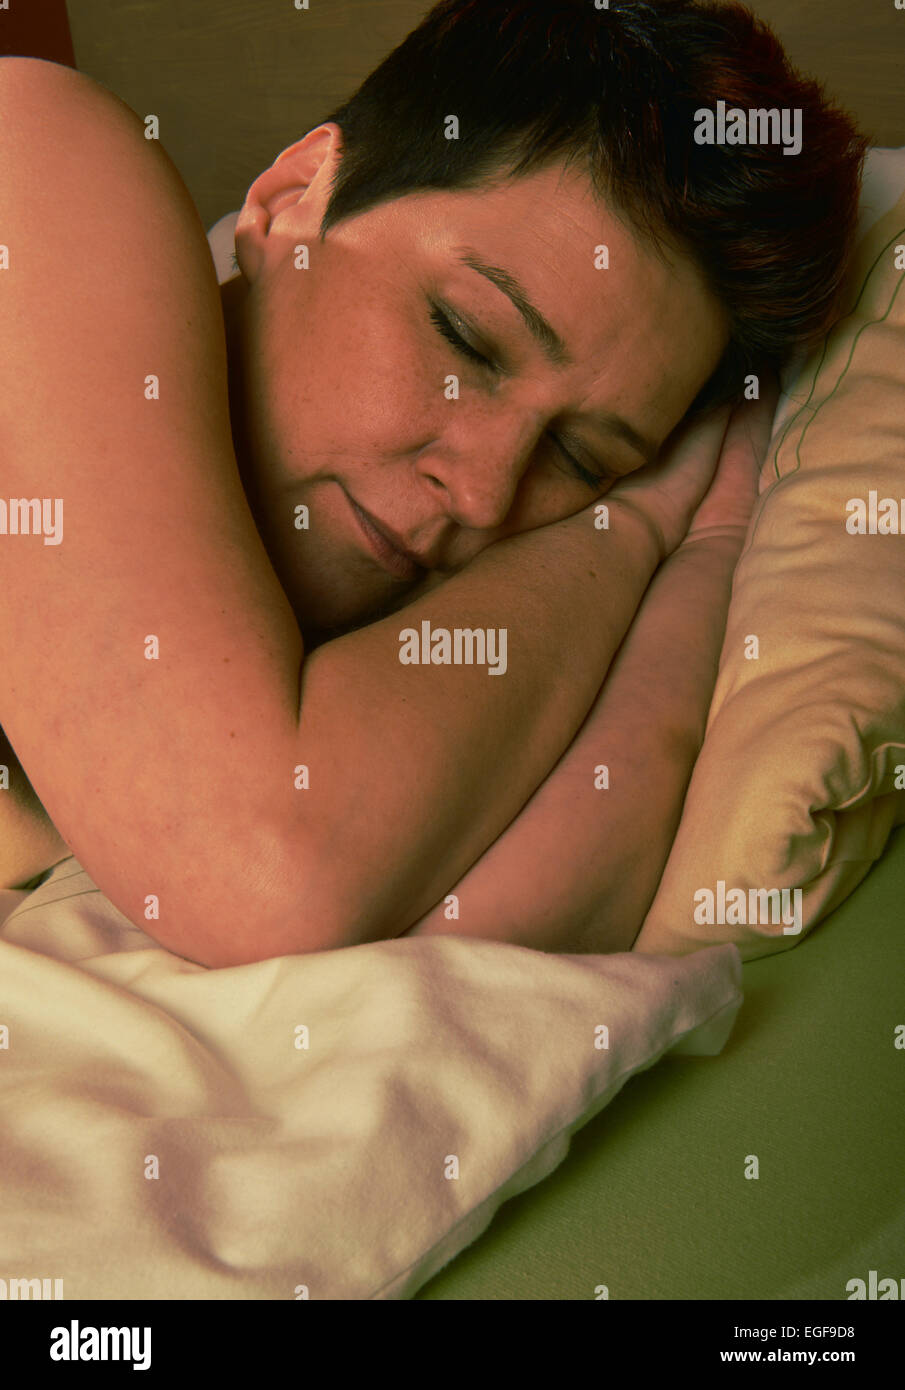 Une femme se trouve dans son lit et dormir. Un sommeil sain est essentiel pour le bien-être d'une personne. Prise le 03/11/2014 à Iserlohn. Banque D'Images